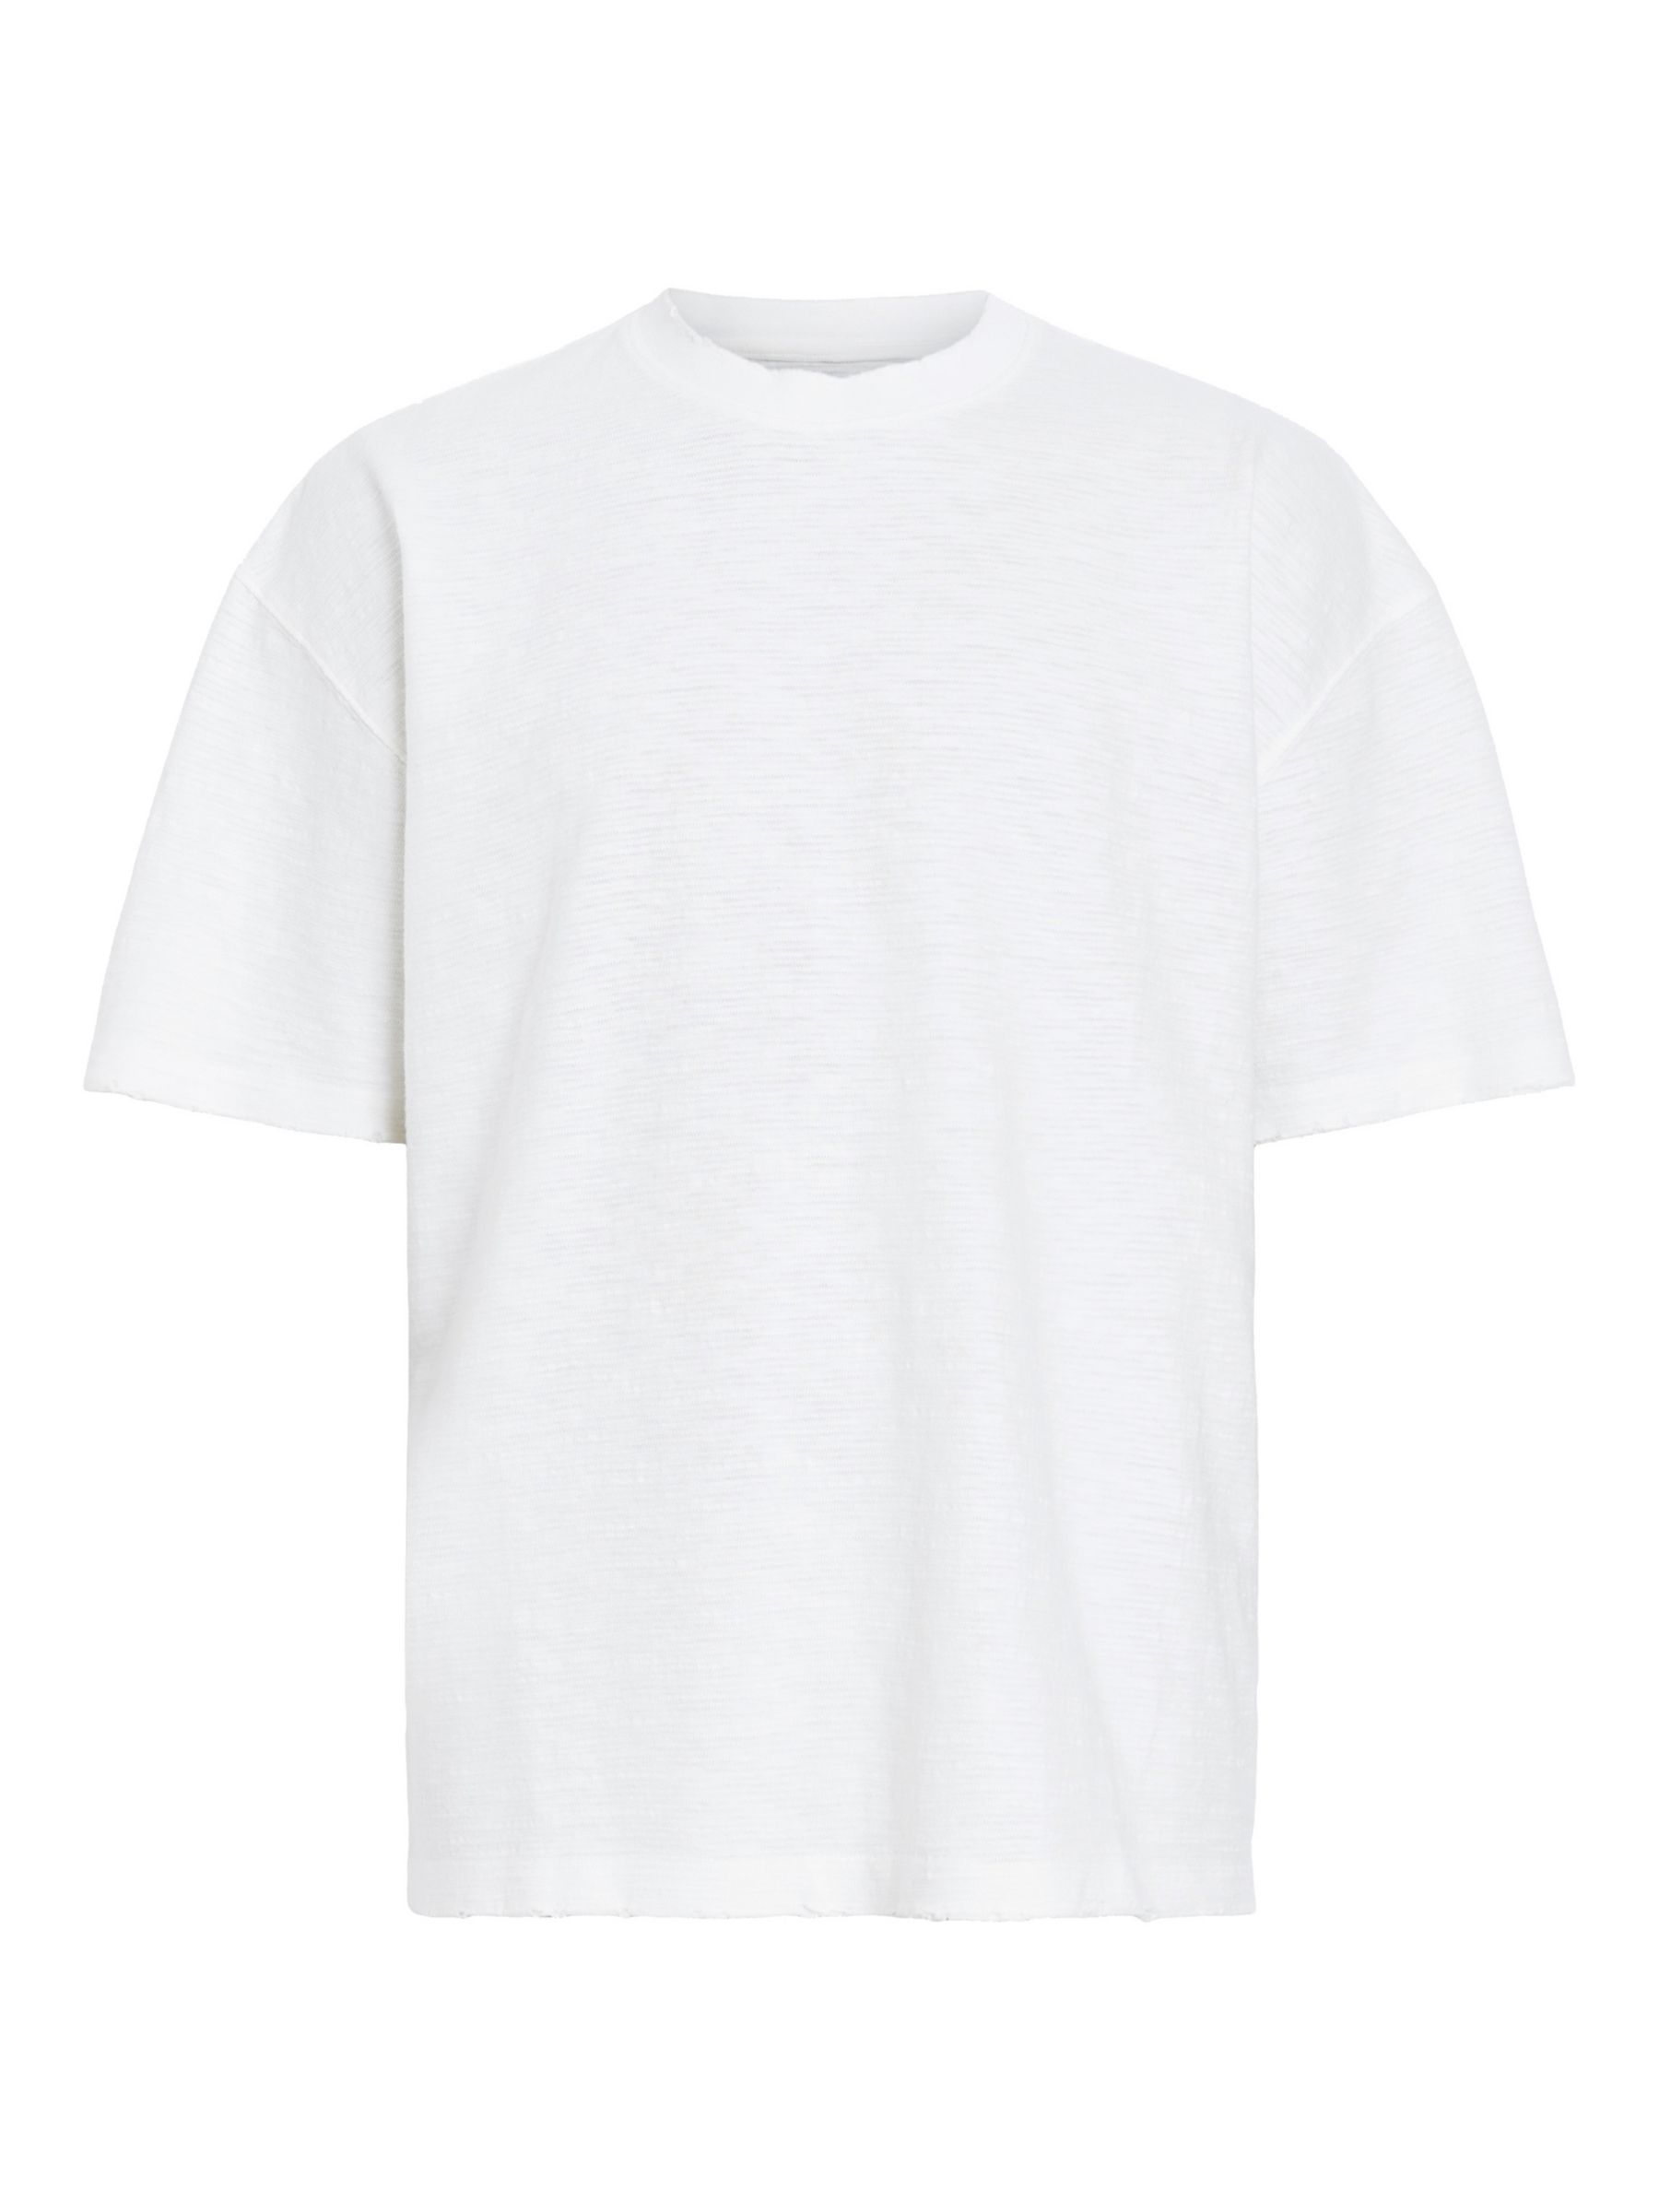 AllSaints Aspen Oversized Short Sleeve T-Shirt, Lilly White, XS